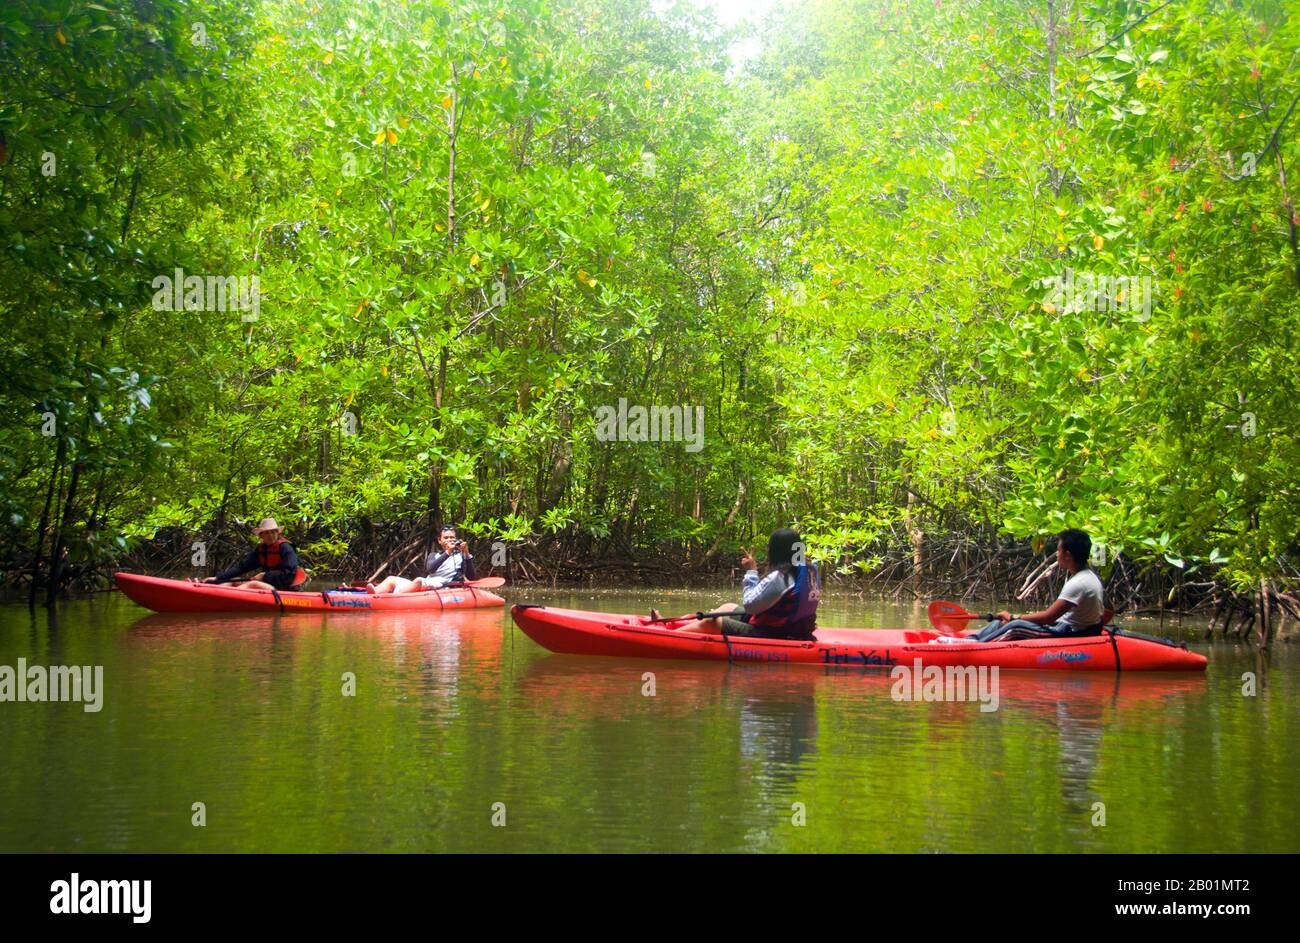 Thailandia: Kayak nelle mangrovie, oltre al parco nazionale di Bokkharani, provincia di Krabi. Il Parco Nazionale di Than Bokkharani si trova nella provincia di Krabi a circa 45 chilometri (28 miglia) a nord-ovest della città di Krabi. Il parco copre un'area di 121 chilometri quadrati (47 miglia quadrate) ed è caratterizzato da una serie di affioramenti calcarei, foreste pluviali sempreverdi, foreste di mangrovie, torbiere e molte isole. Ci sono anche numerose grotte e complessi rupestri con alcune spettacolari stalagmiti e stalattiti. Il Bokkharani è incentrato su due famose grotte, Tham Lot e Tham Phi Hua. Foto Stock